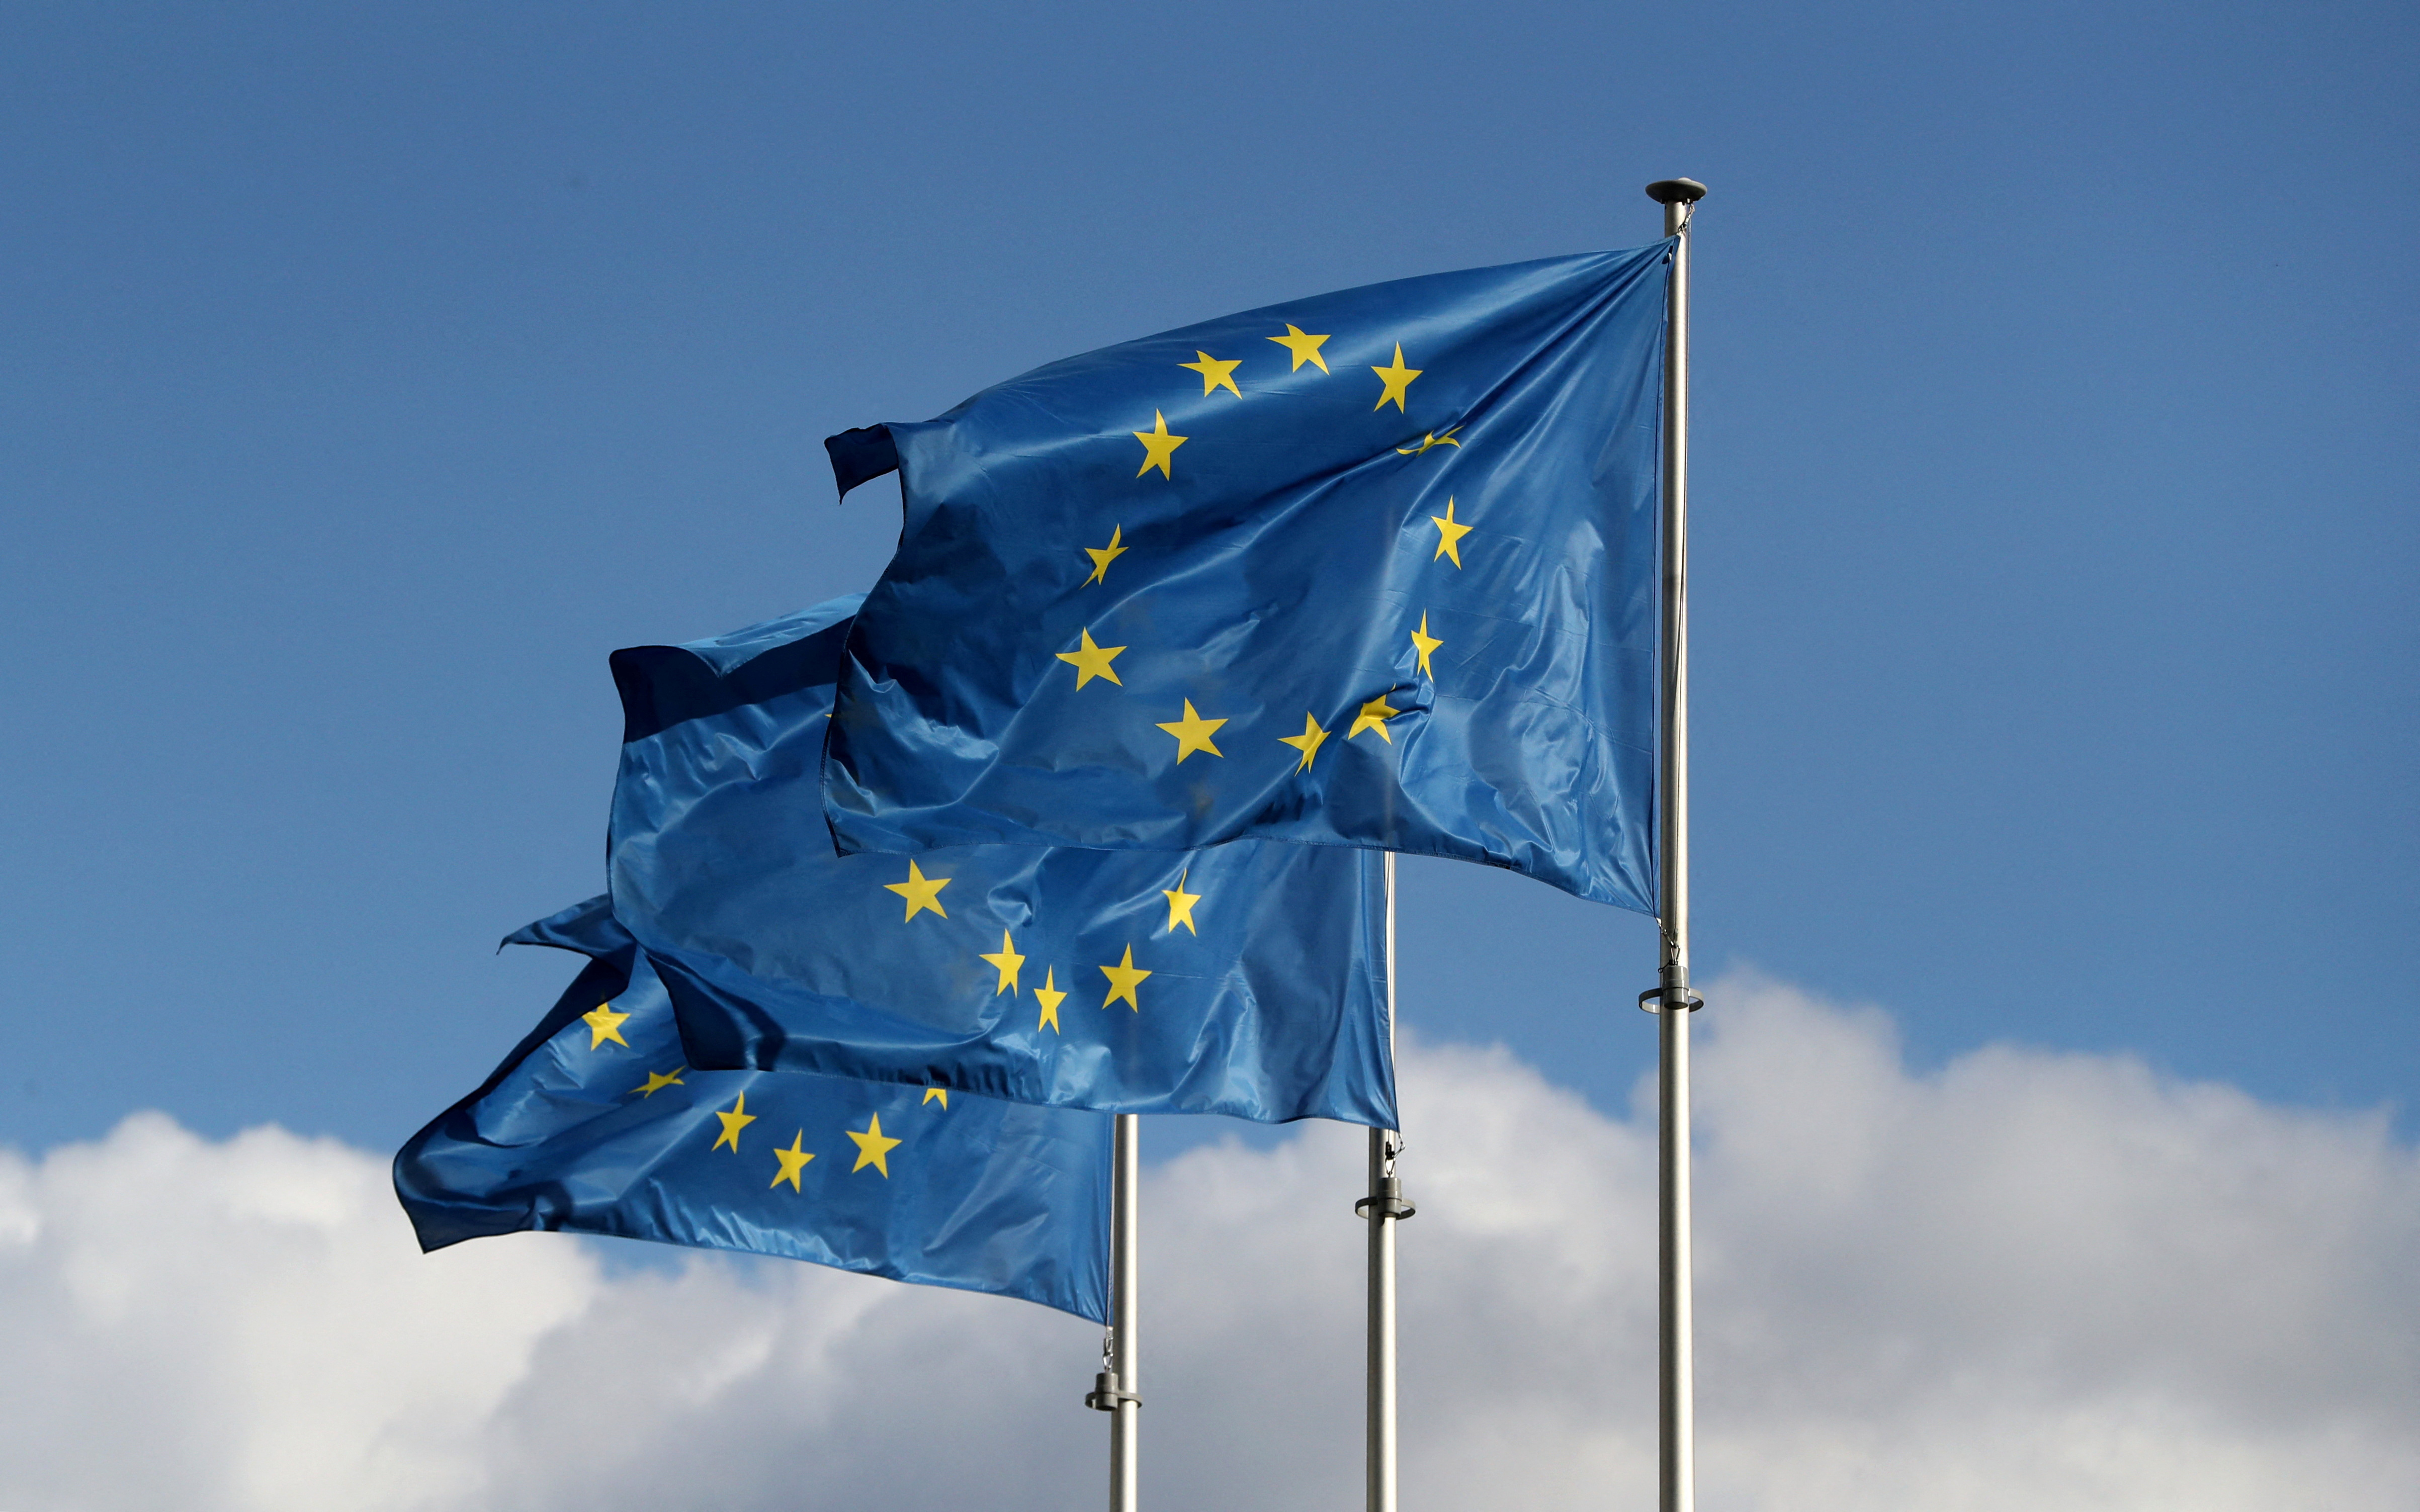 Banderas de la Unión Europea ondean frente a la sede de la Comisión Europea en Bruselas